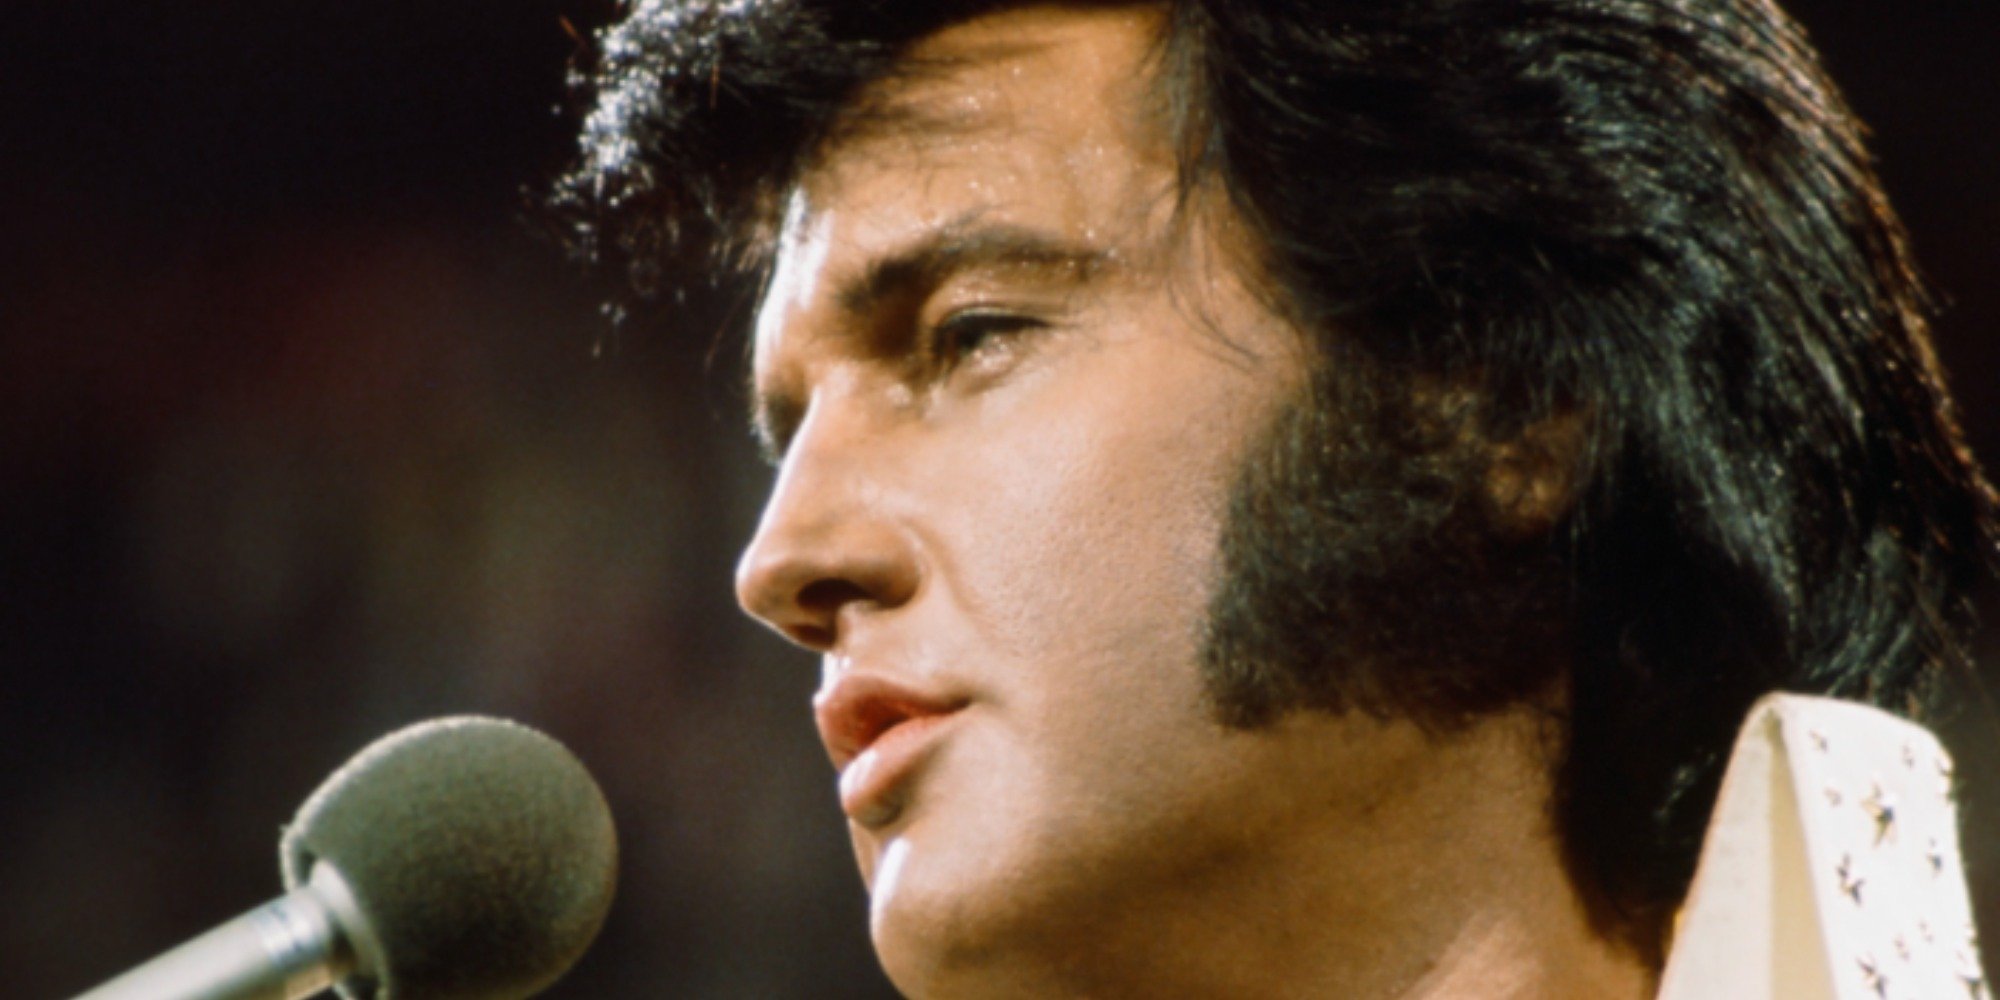 Elvis Presley performing in Hawaii in 1973.